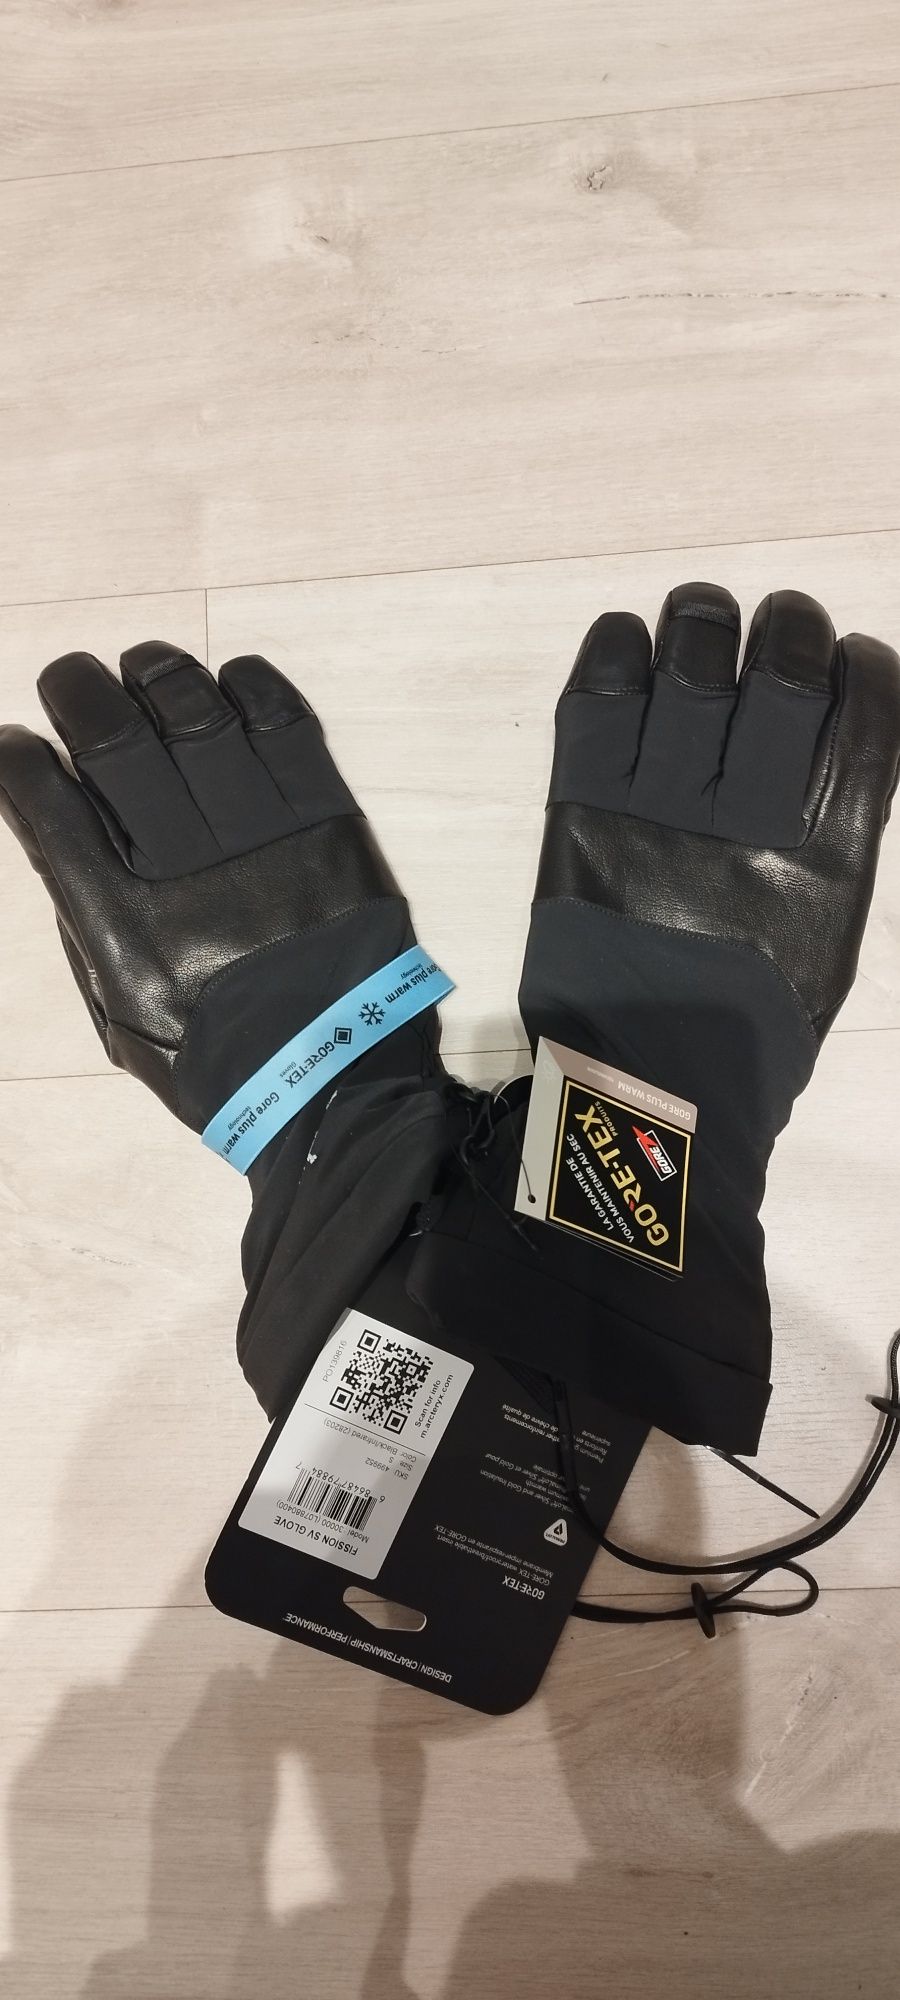 Rękawiczki narciarskie Arcteryx GORE-TEX czarne rozmiar S